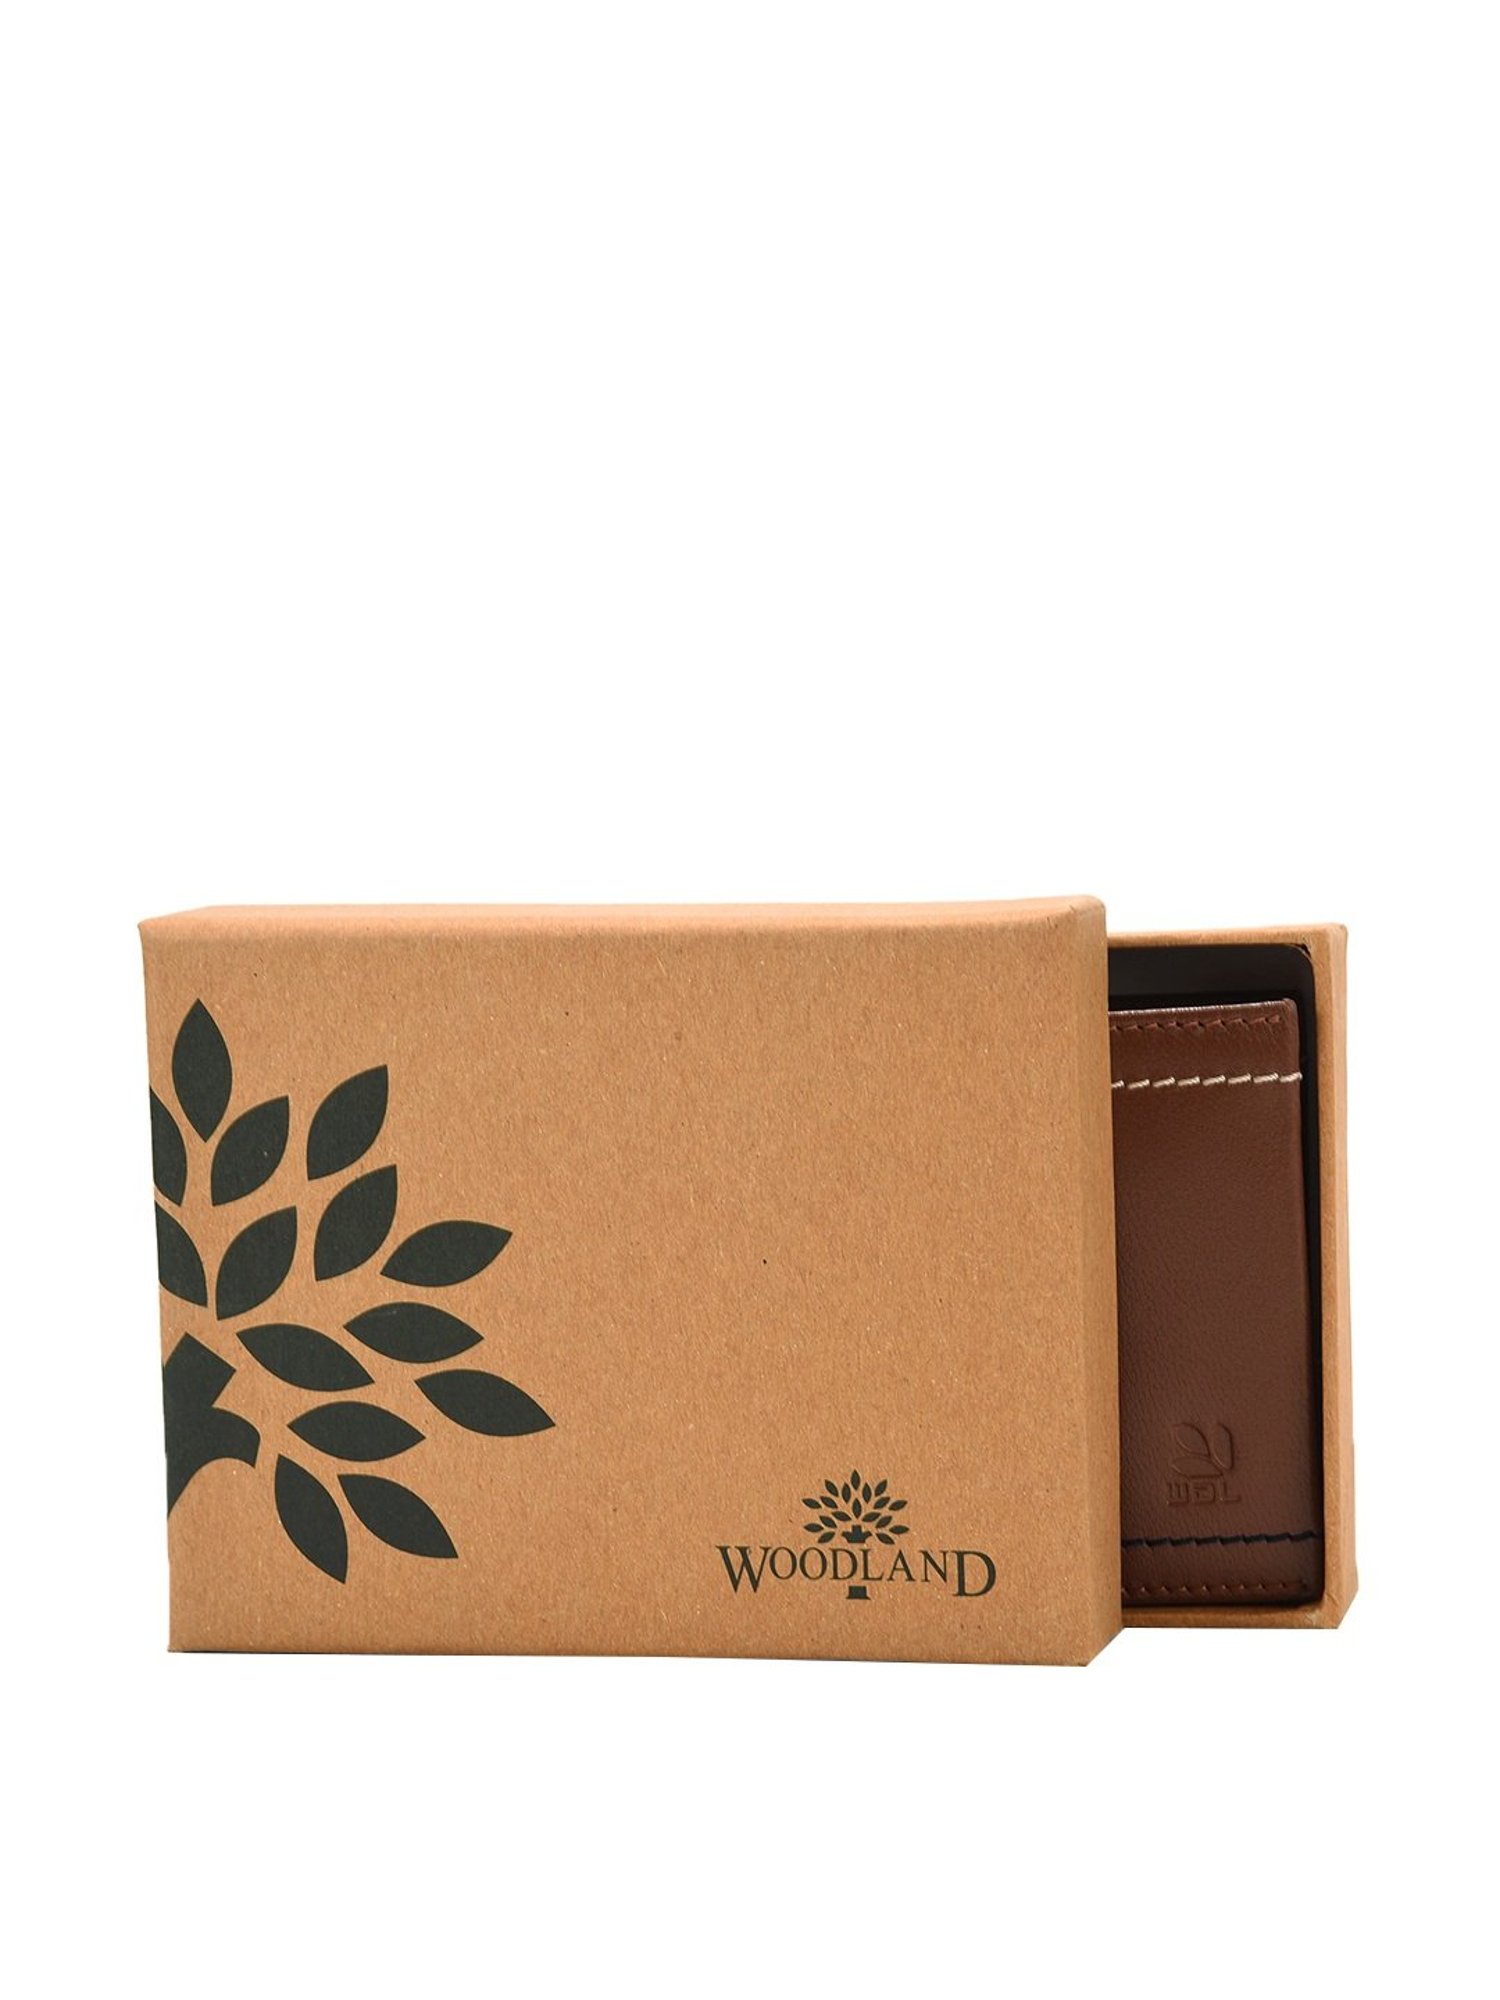 Woodland Card Holder For Men